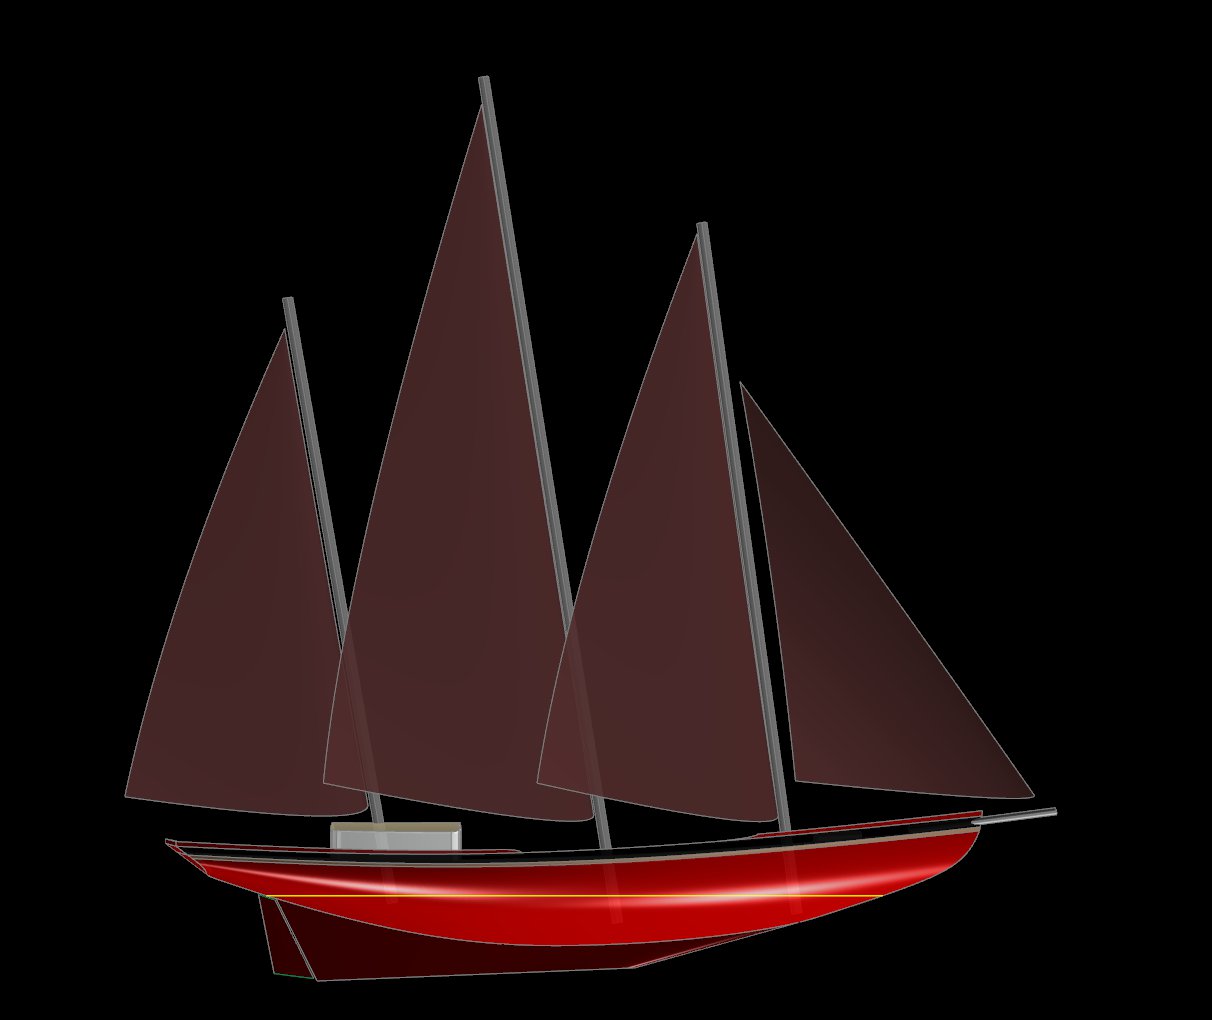 73' Schooner Caribe - Kasten Marine Design, Inc.